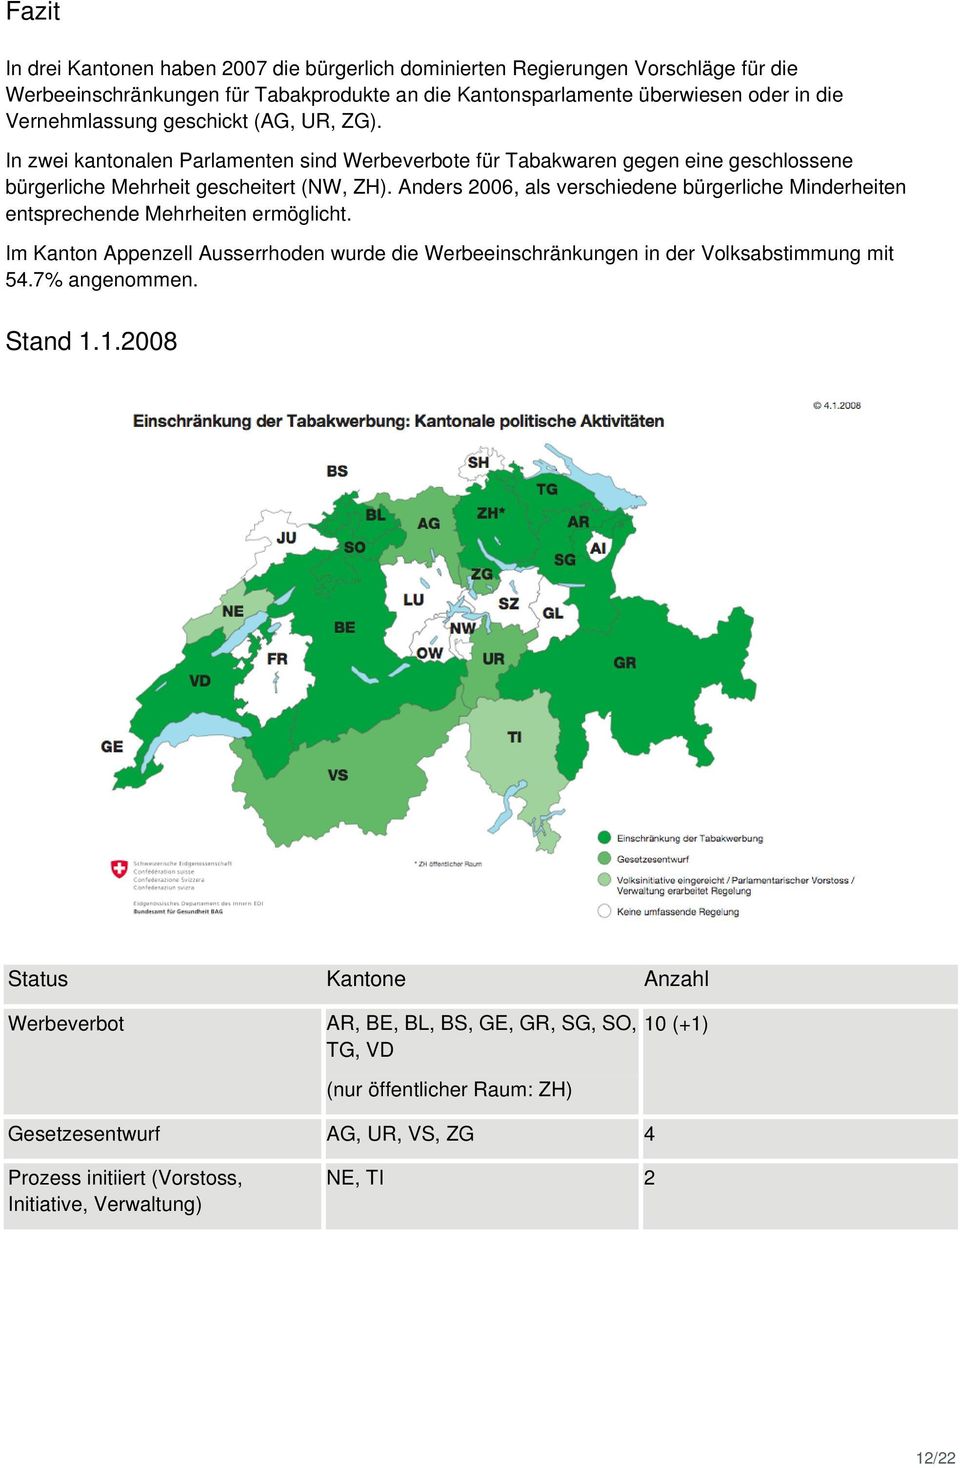 Anders 2006, als verschiedene bürgerliche Minderheiten entsprechende Mehrheiten ermöglicht. Im Kanton Appenzell Ausserrhoden wurde die Werbeeinschränkungen in der Volksabstimmung mit 54.